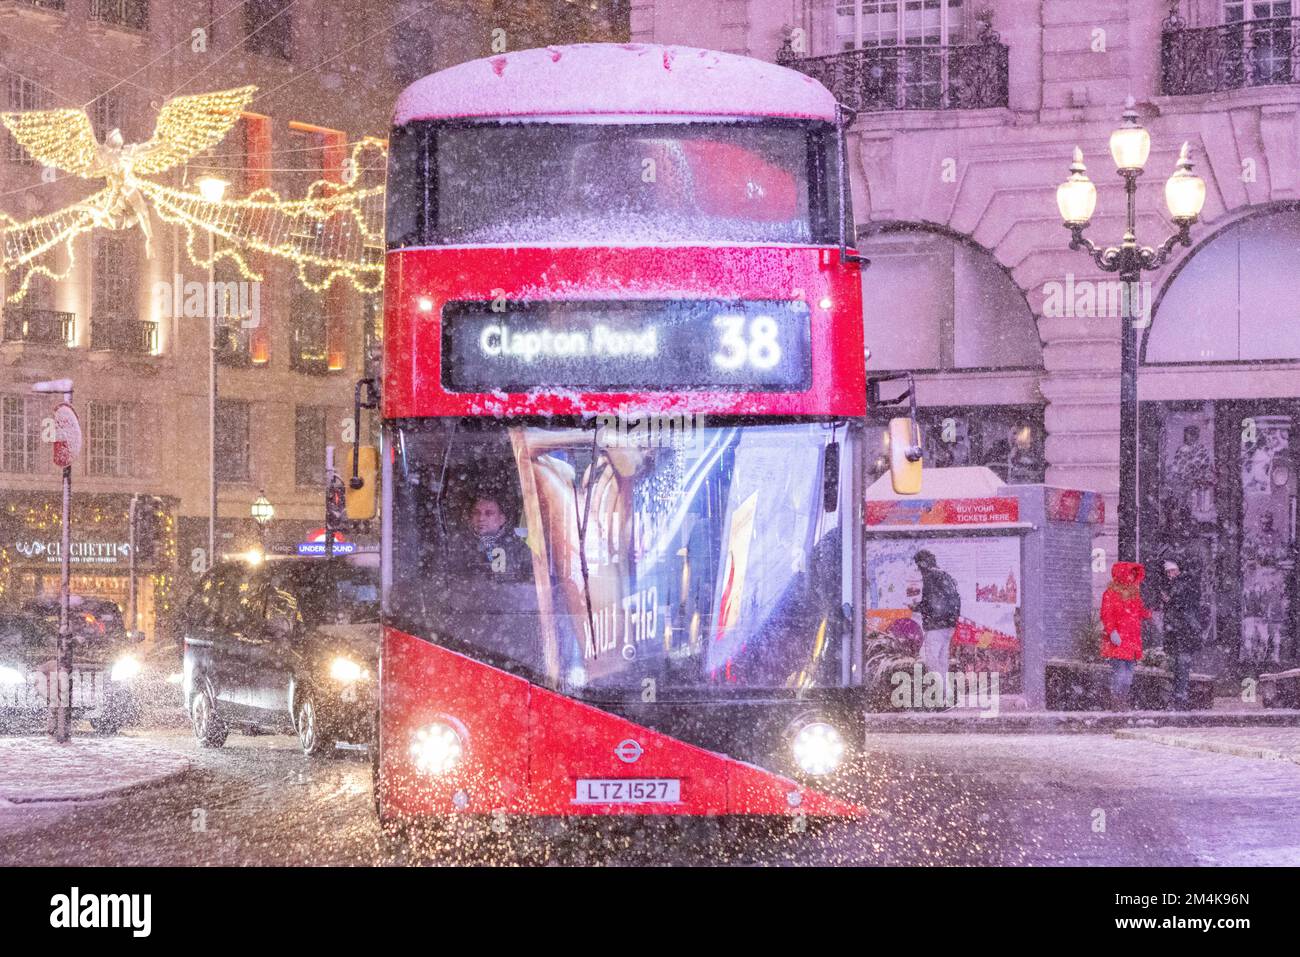 Questa sera la neve cade a Londra, come si vede nel centro di Londra. Immagine scattata il 1st dicembre 2022. © Belinda Jiao jiao.bilin@gmail.com 07598931257 http Foto Stock